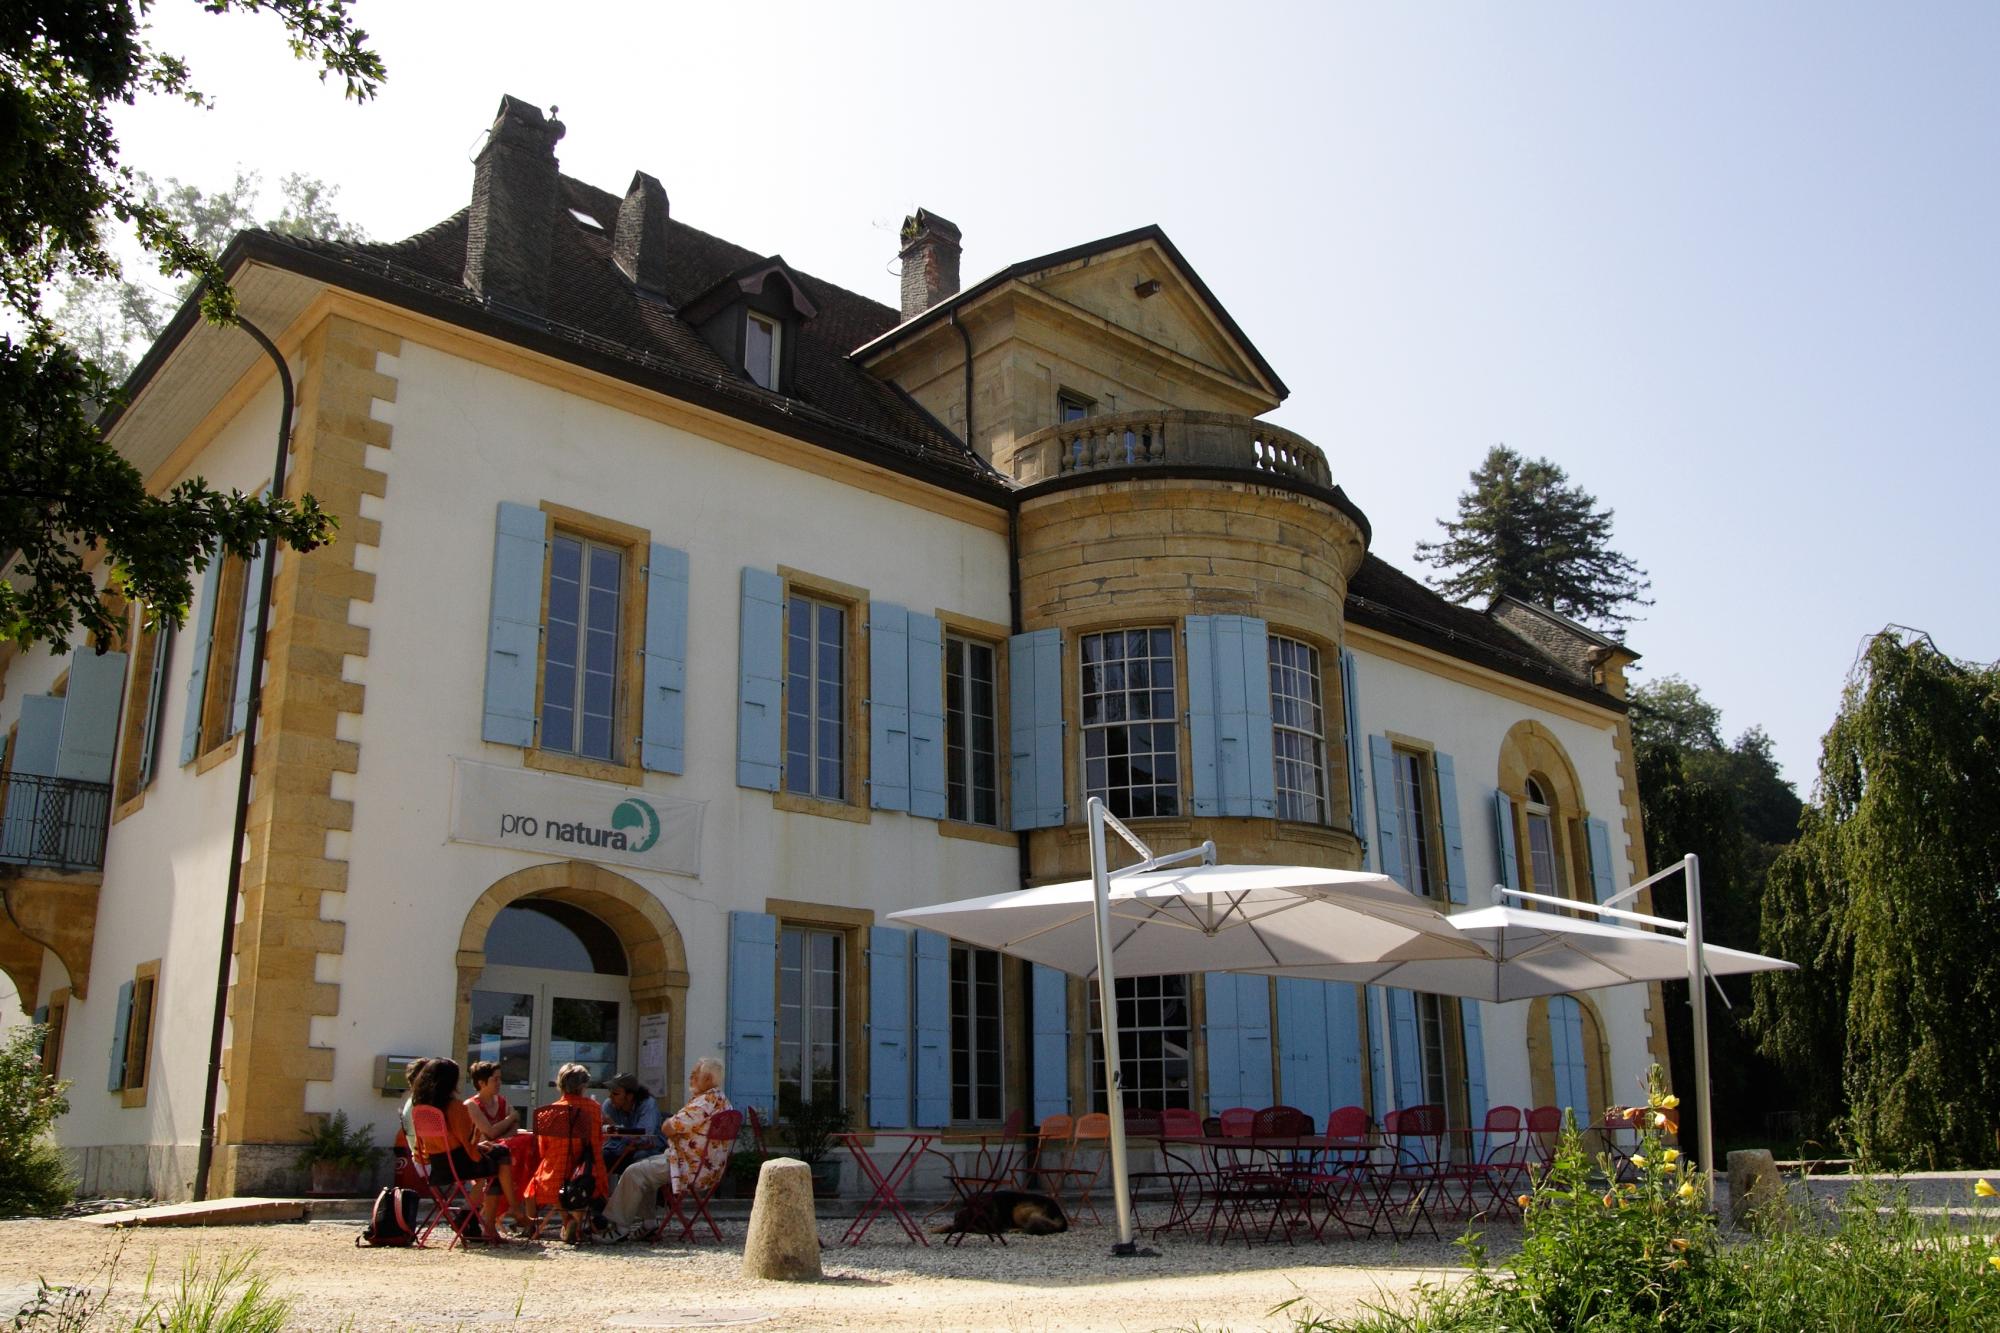 Chateau de Champ-Pittet